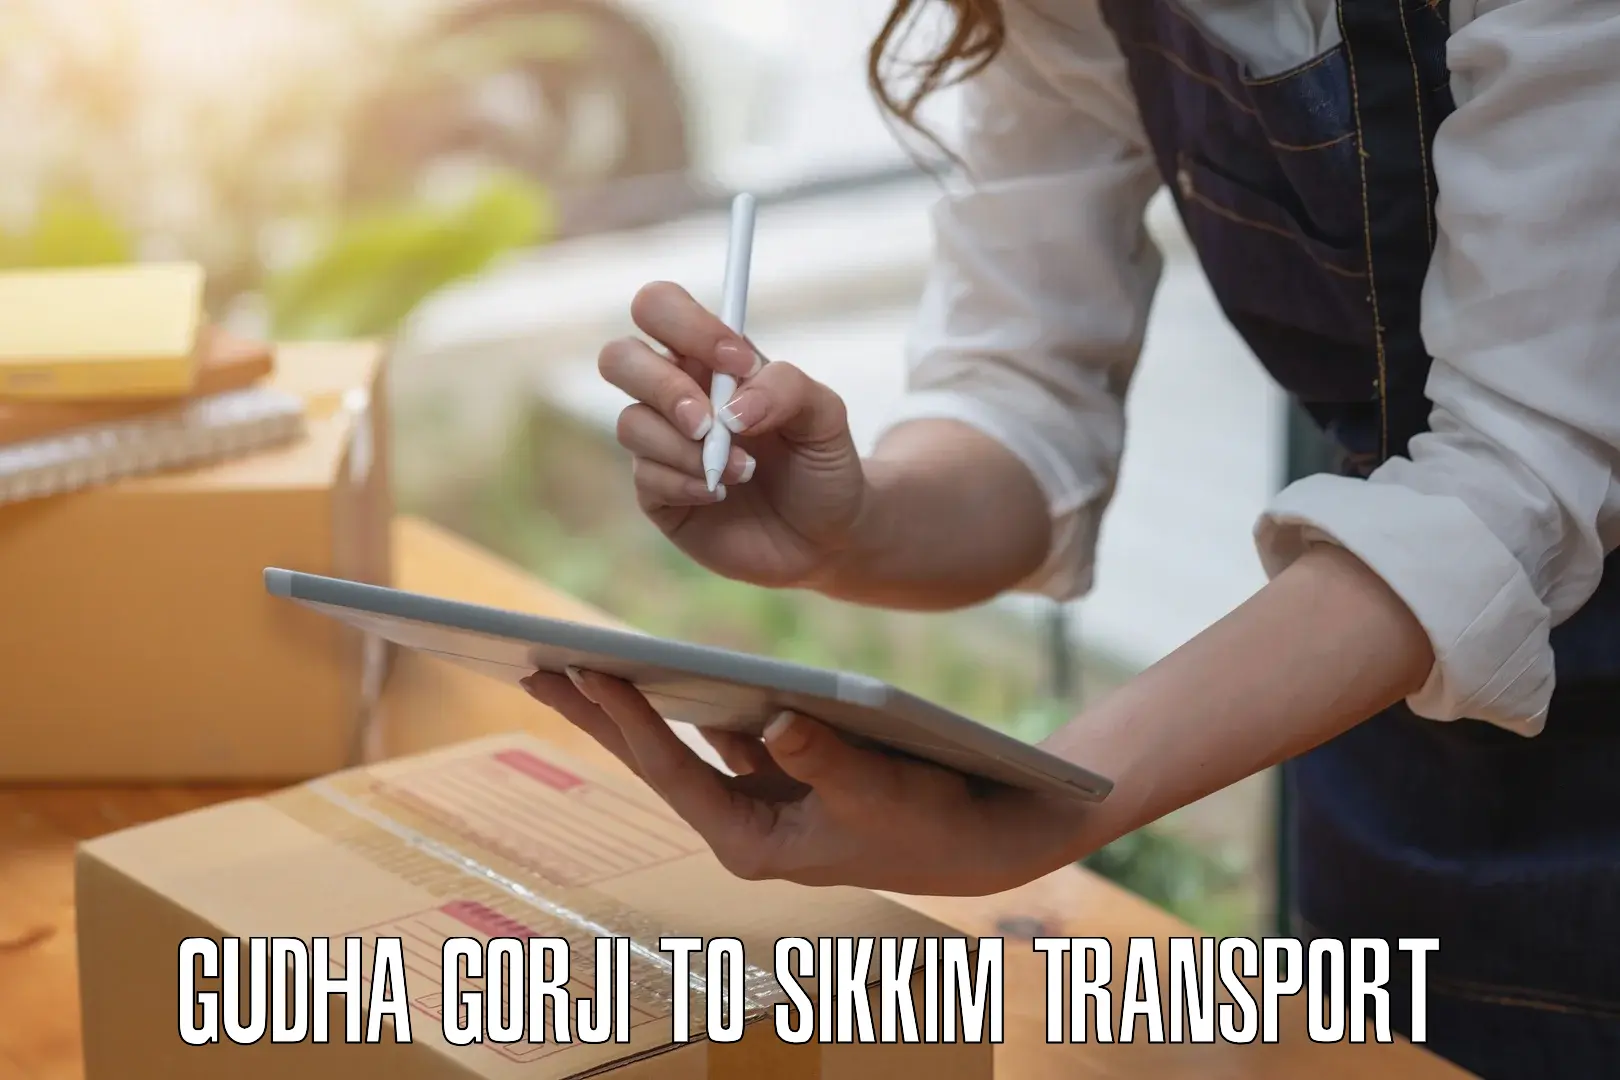 Transport in sharing Gudha Gorji to Mangan